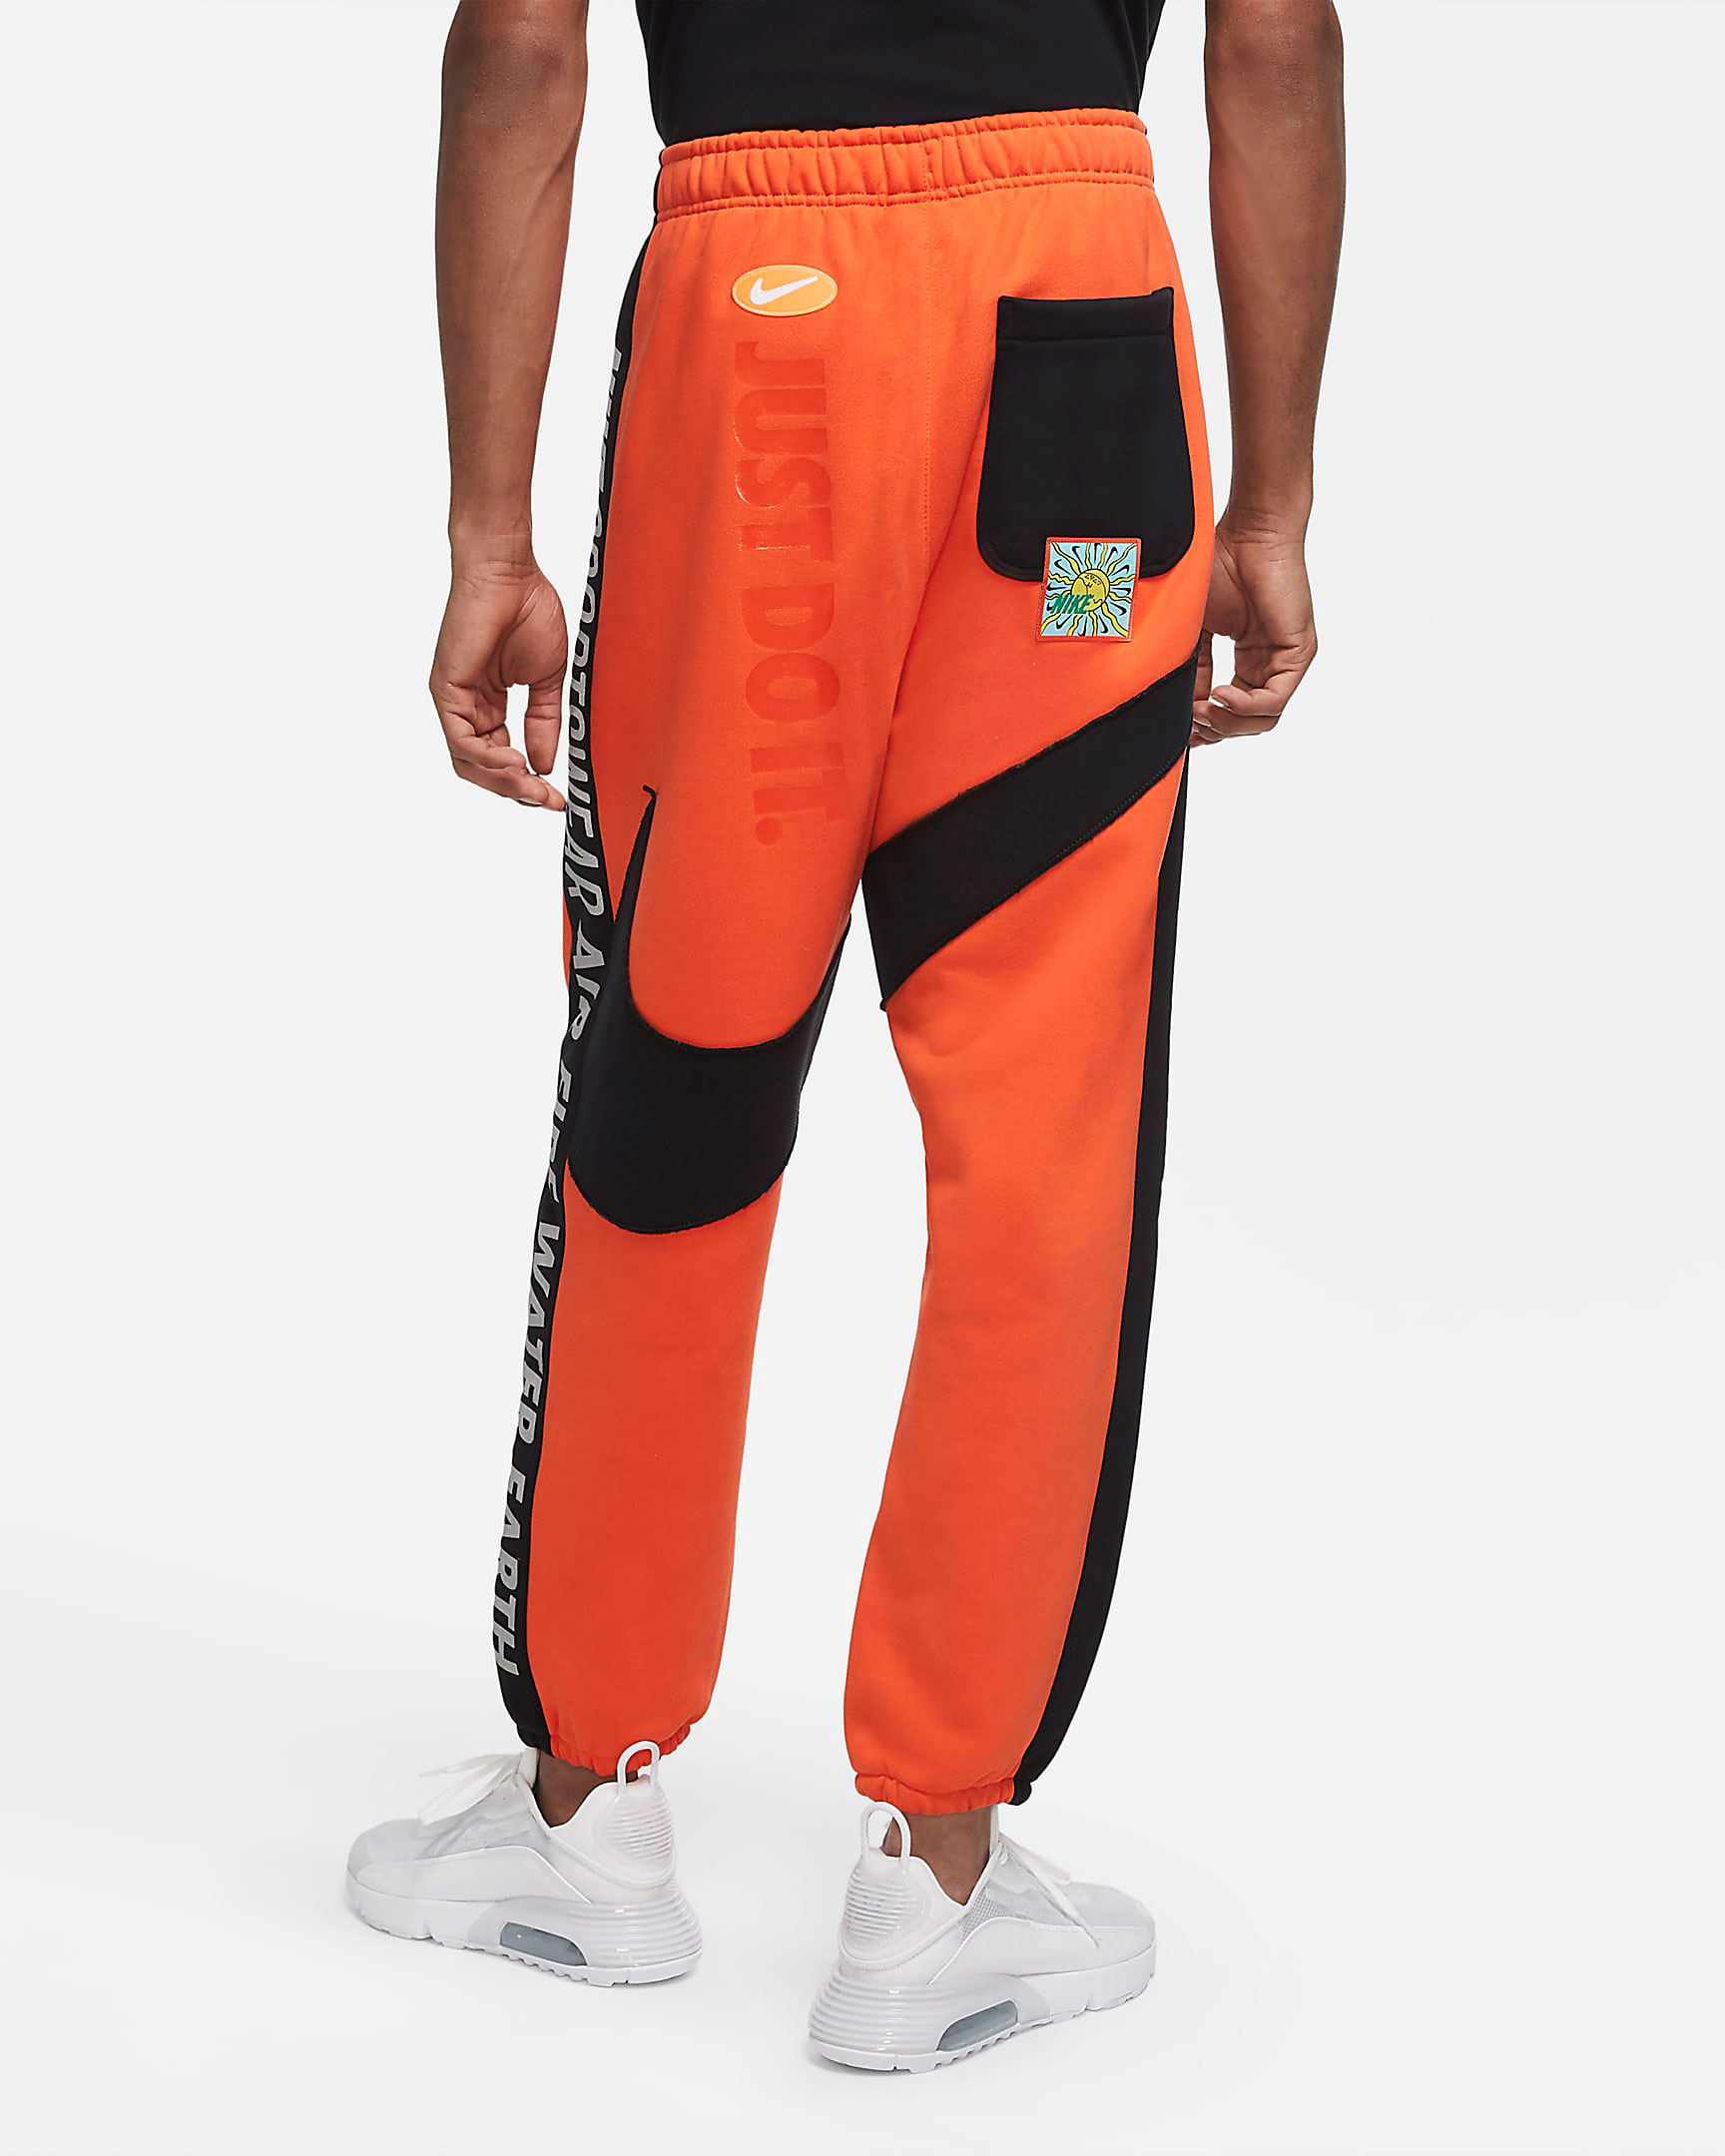 nike-air-max-drip-jogger-pants-orange-2